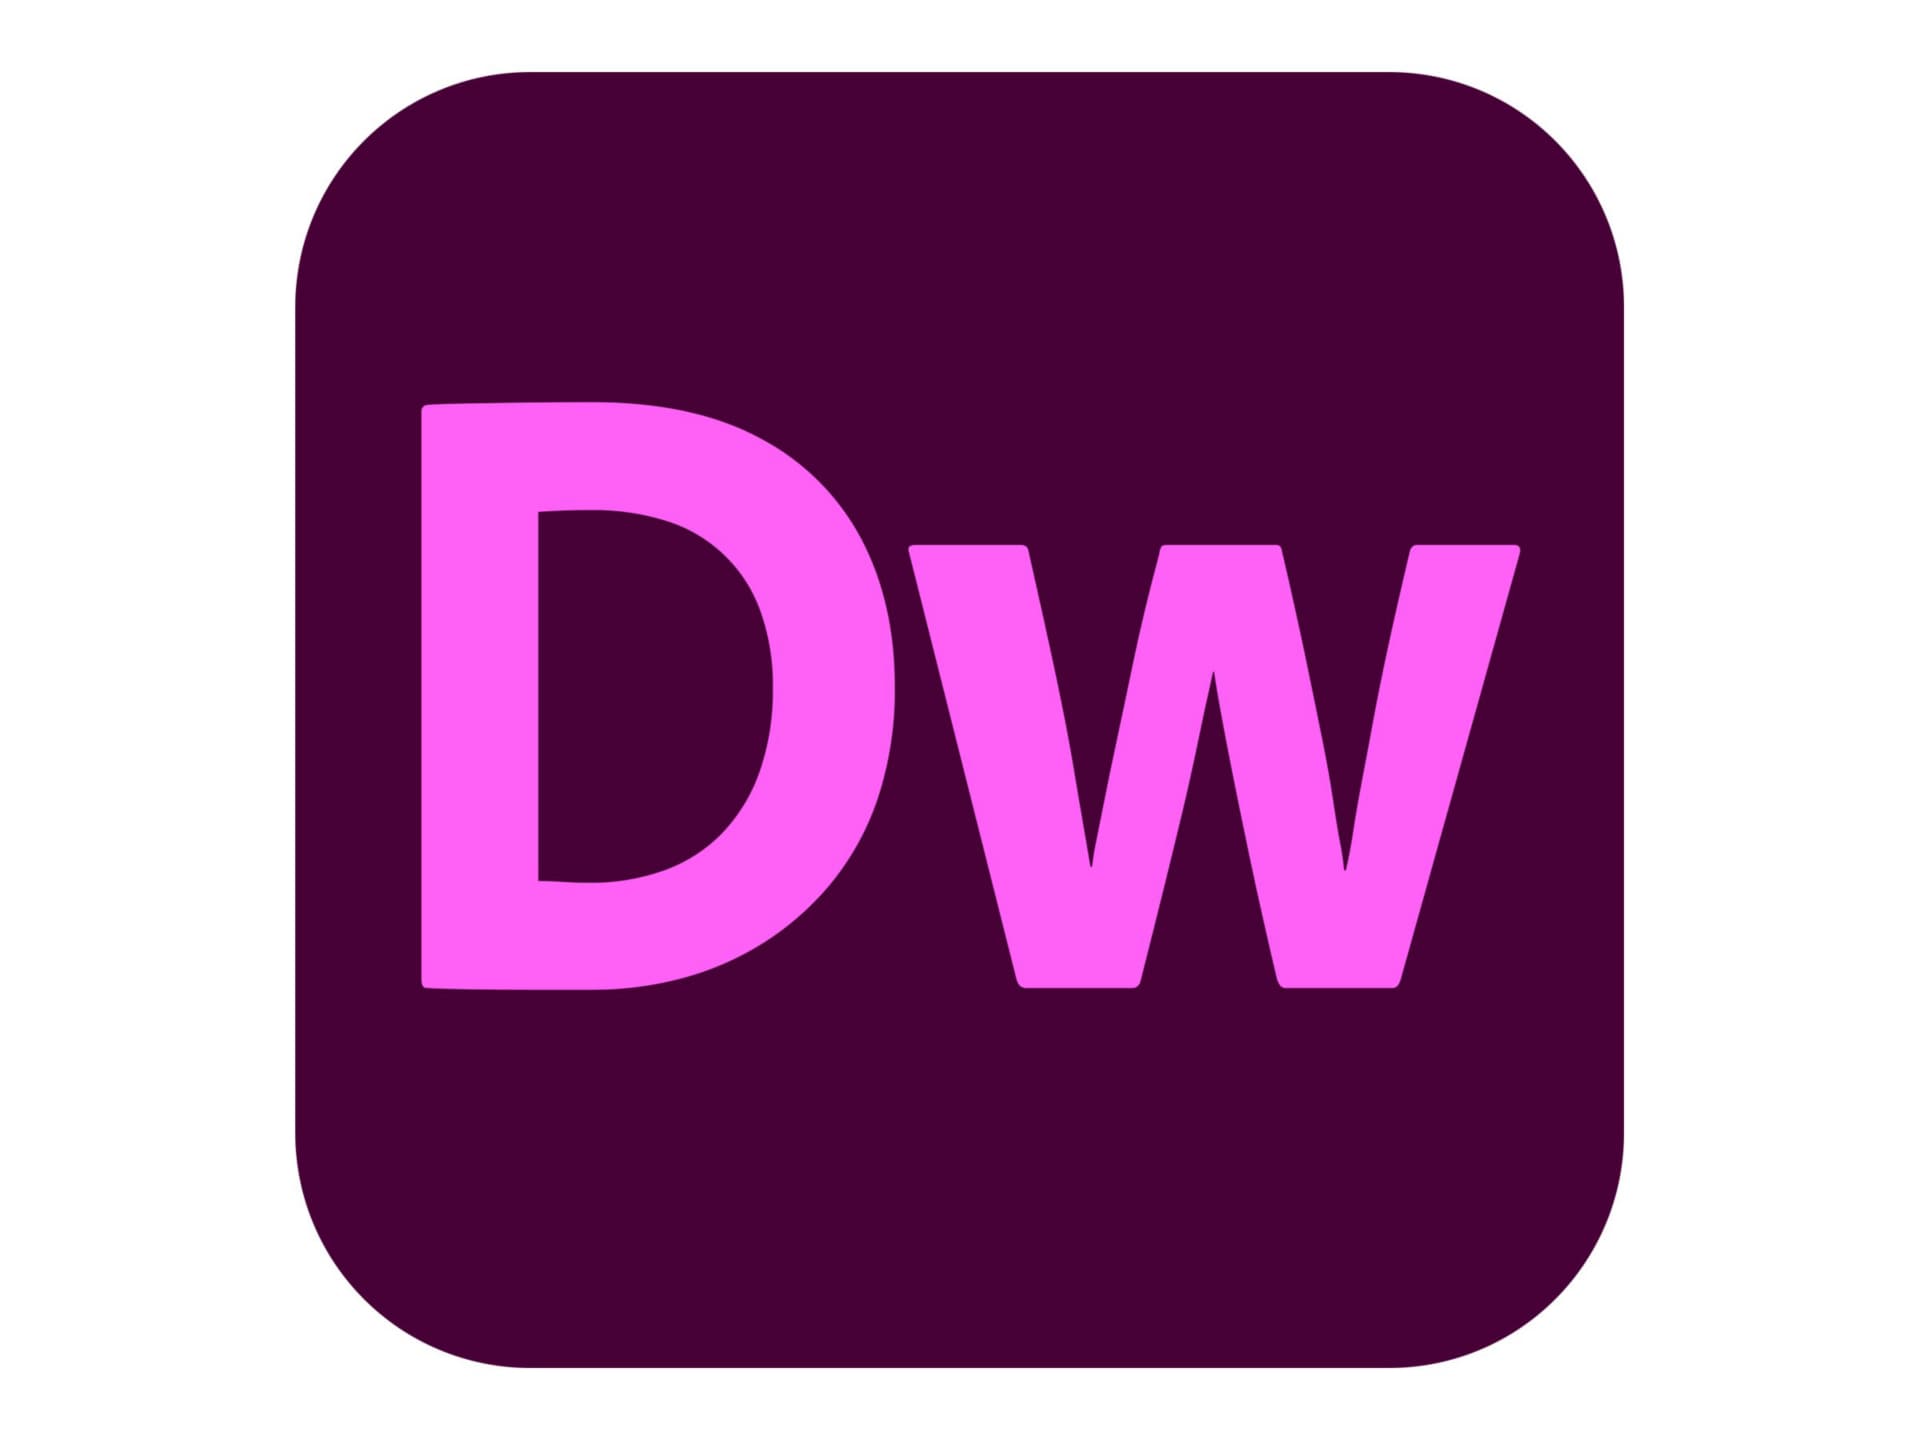 Adobe Dreamweaver CC for Enterprise - Subscription New - 1 named user